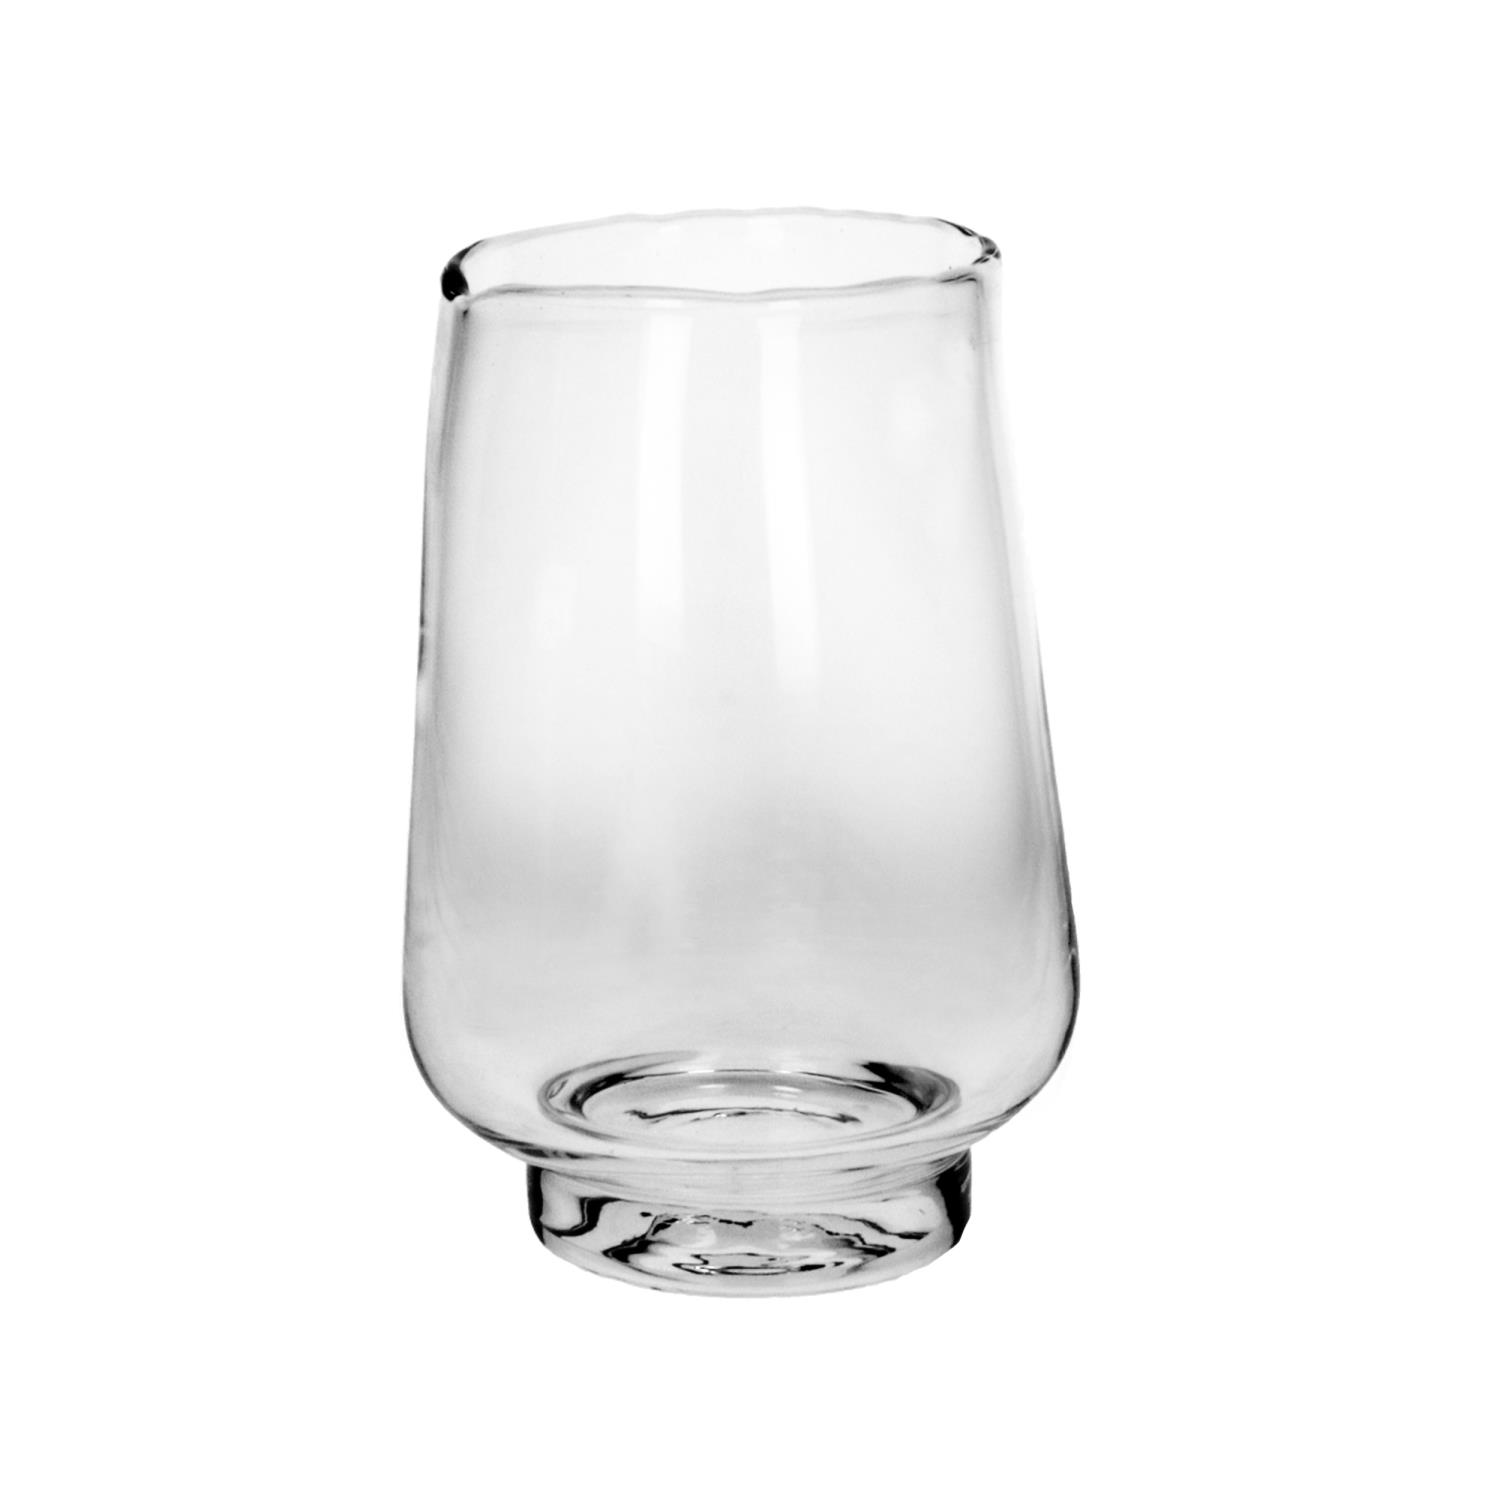 Elyzia Hurricane Vase Glass Clear Dia 20cm 36967-clr-10